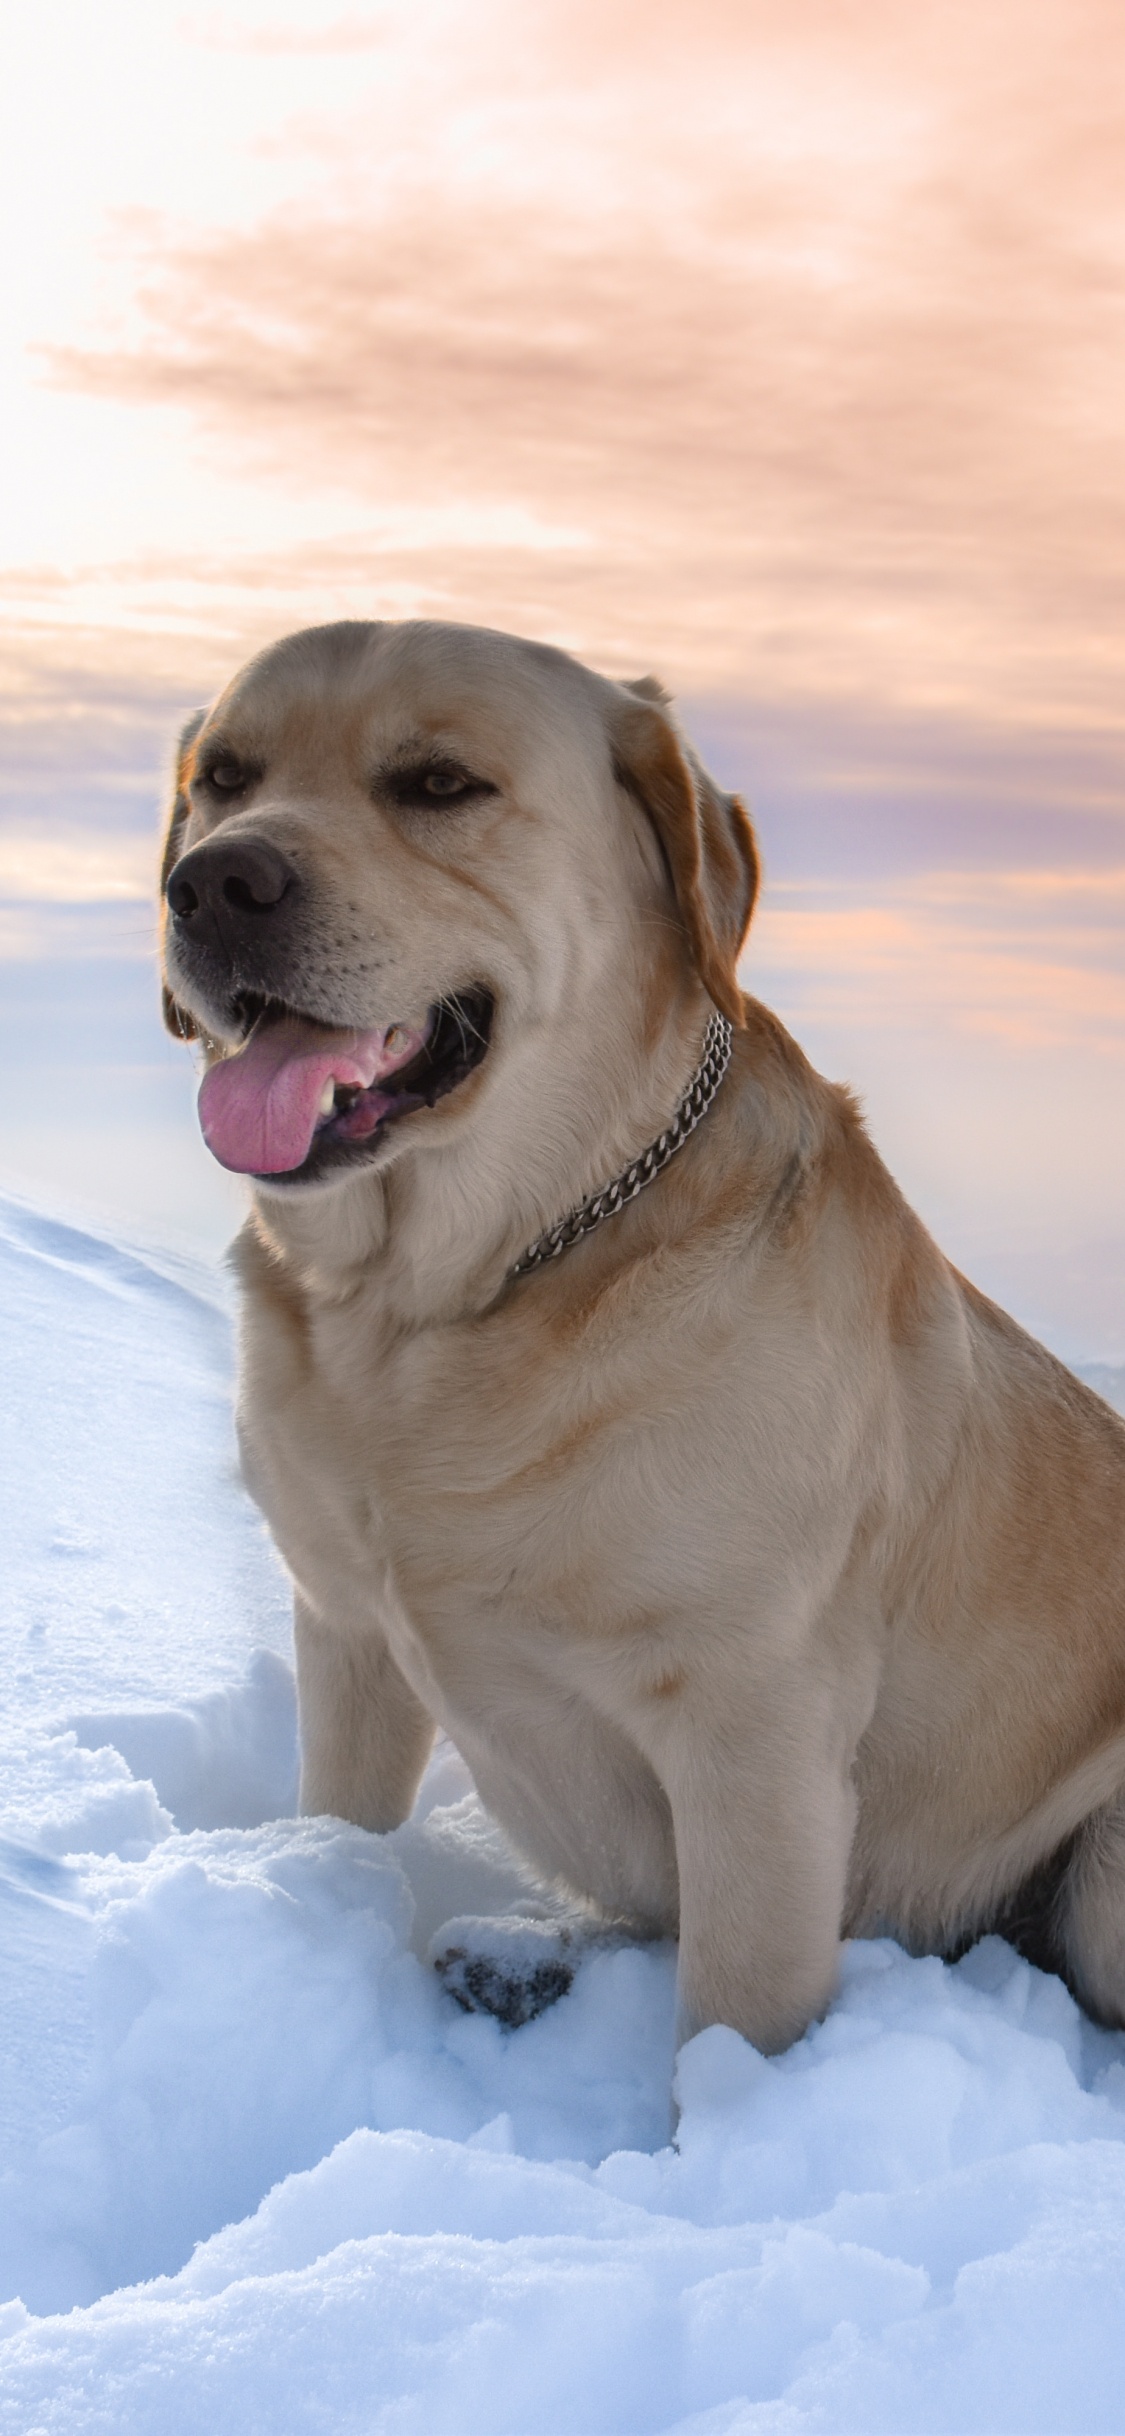 Brauner, Kurzhaariger Hund Auf Schneebedecktem Boden Tagsüber. Wallpaper in 1125x2436 Resolution